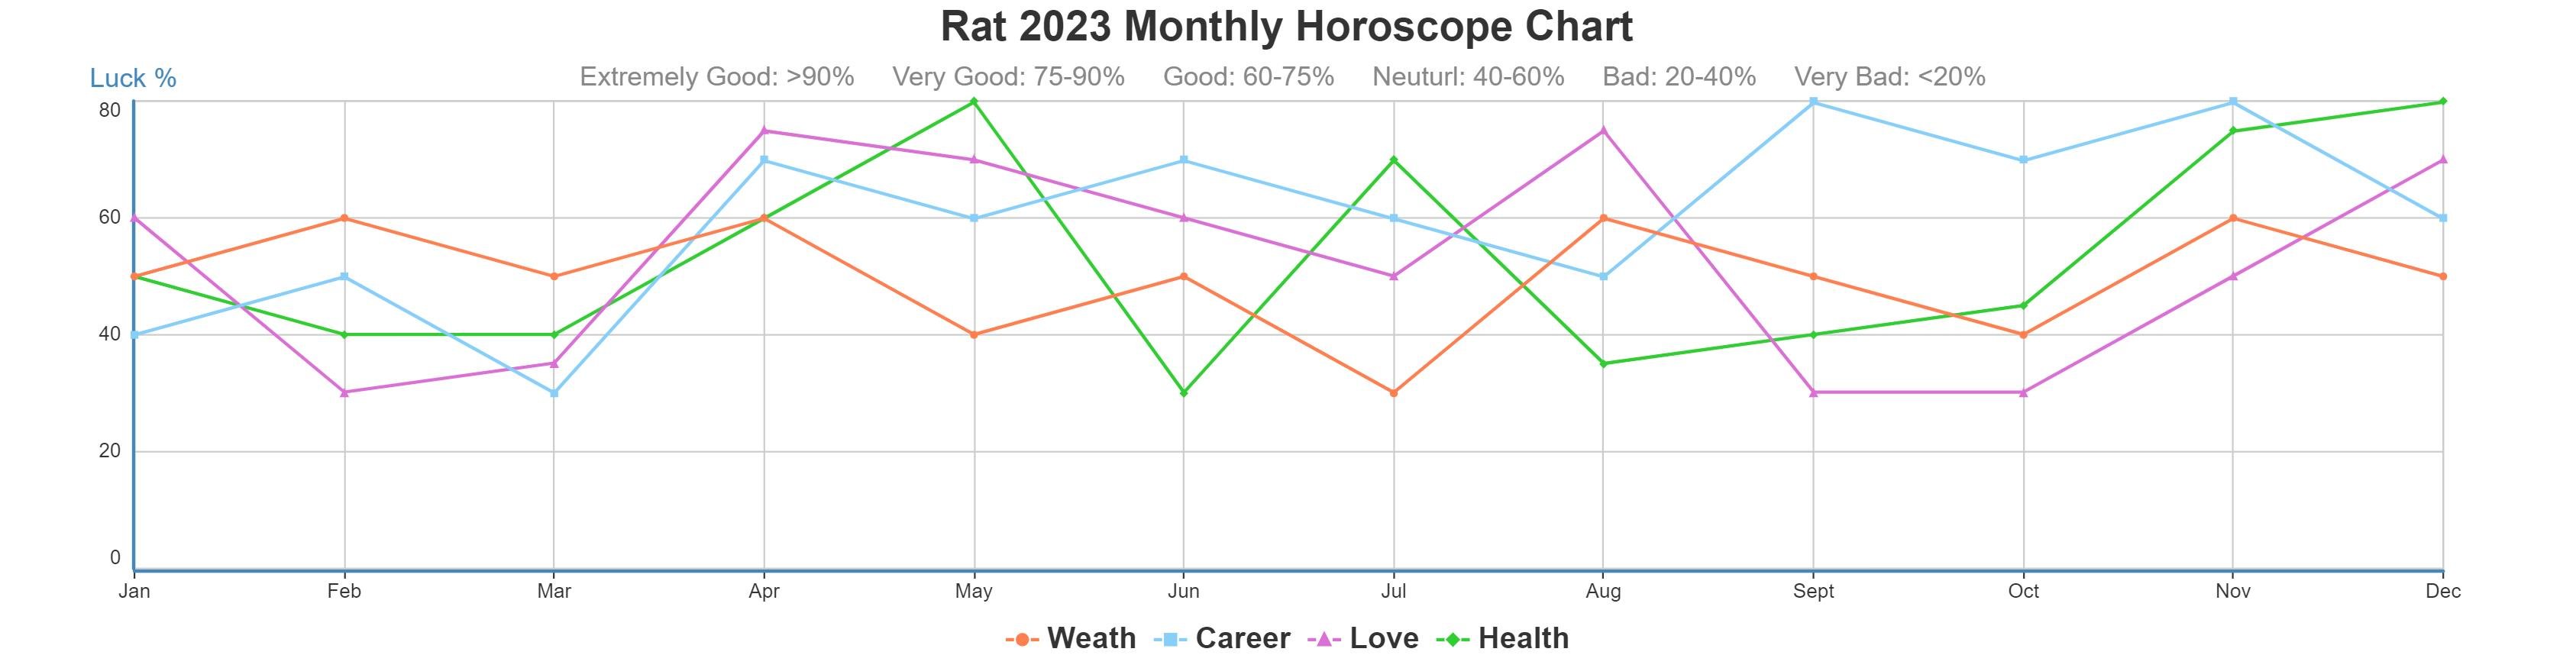 Rat 2023 monthly horoscope